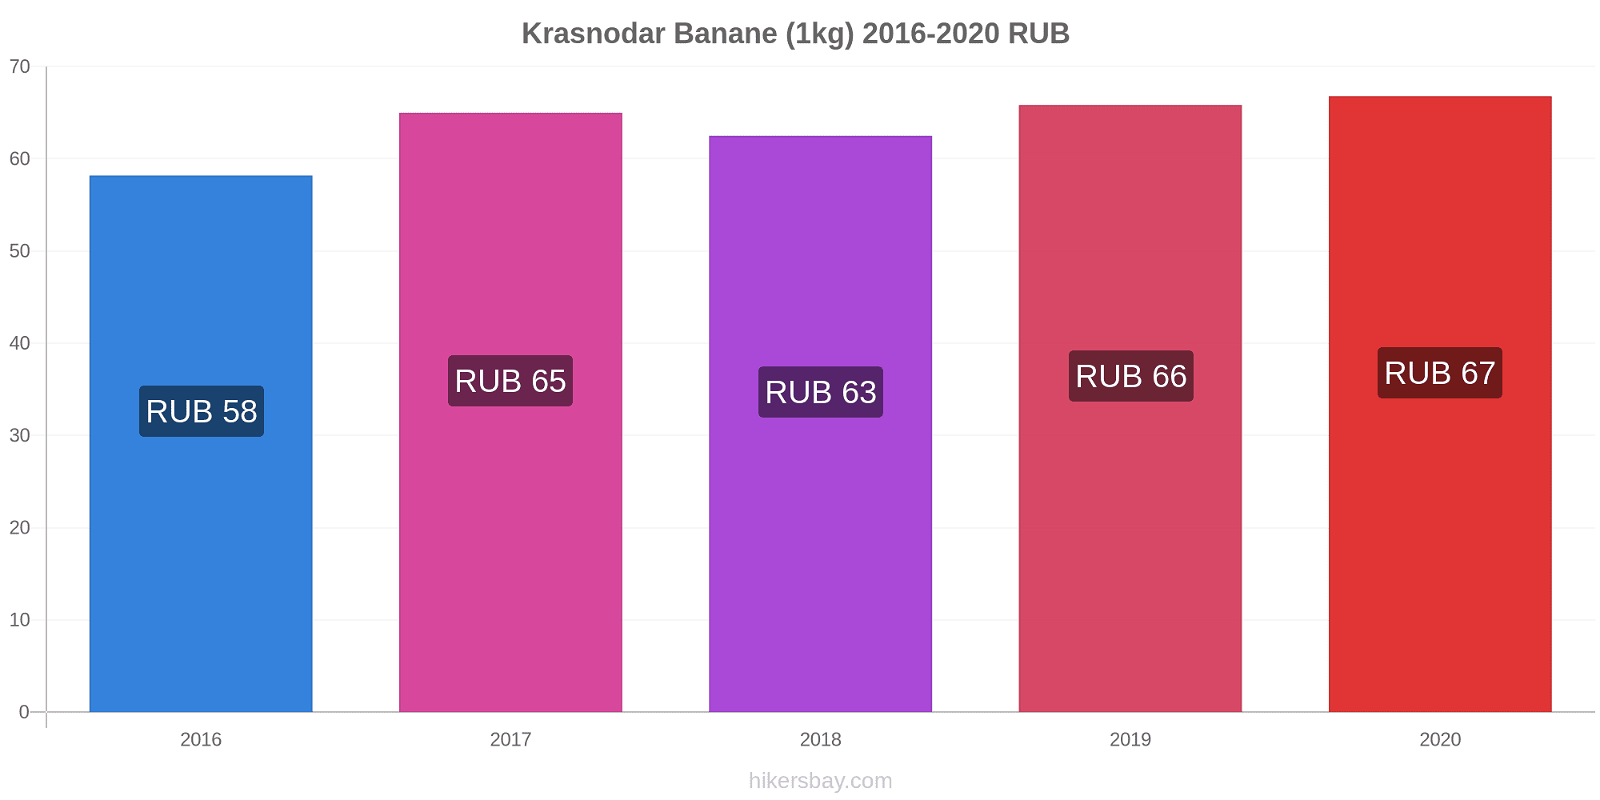 Krasnodar variazioni di prezzo Banana (1kg) hikersbay.com